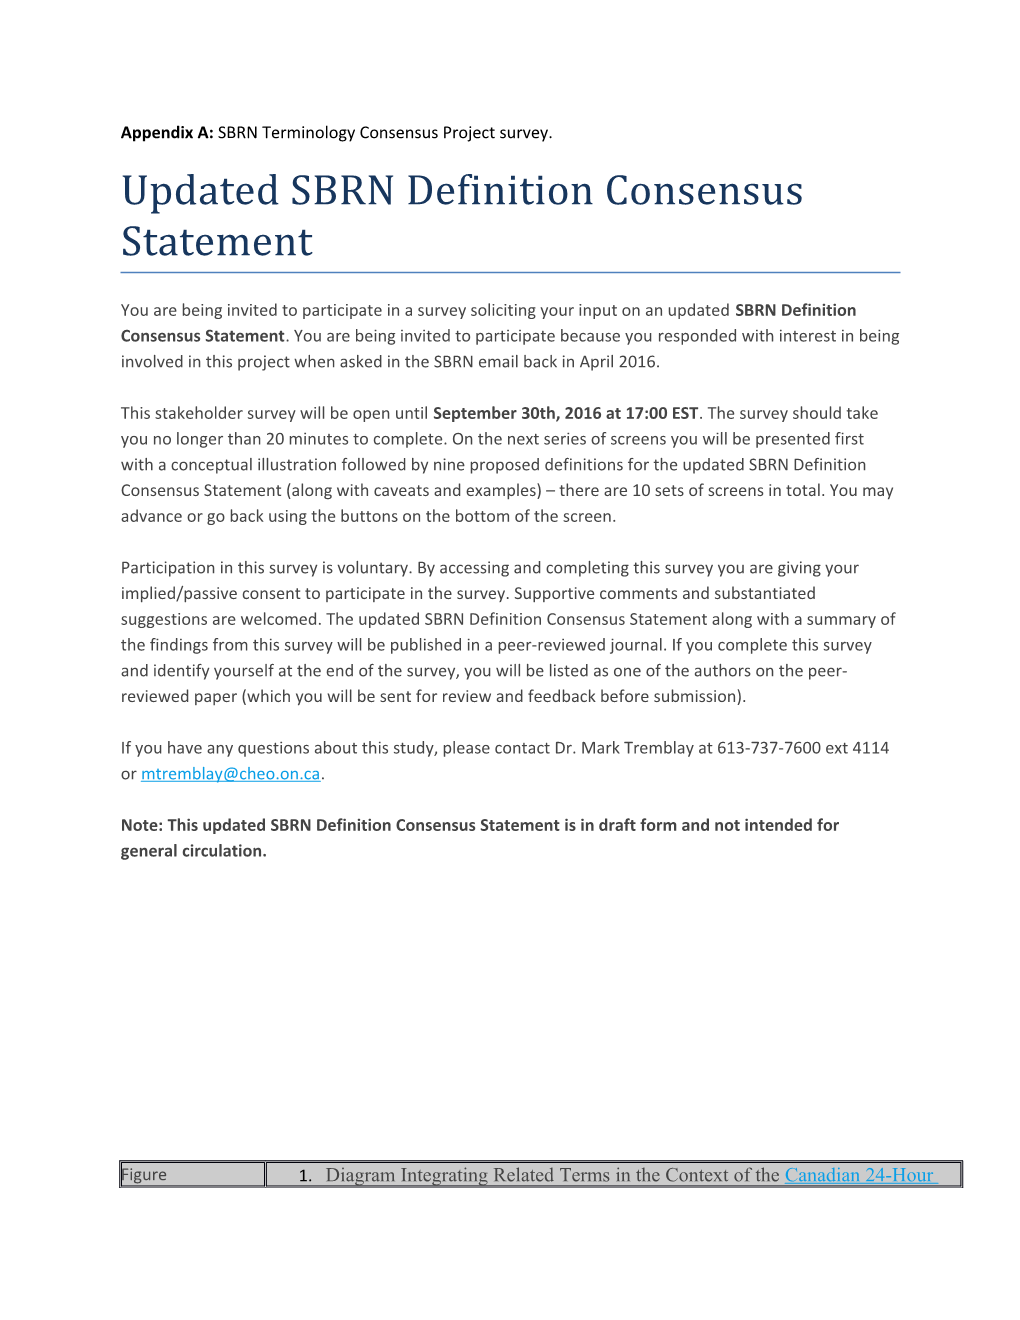 Appendix A: SBRN Terminology Consensus Project Survey